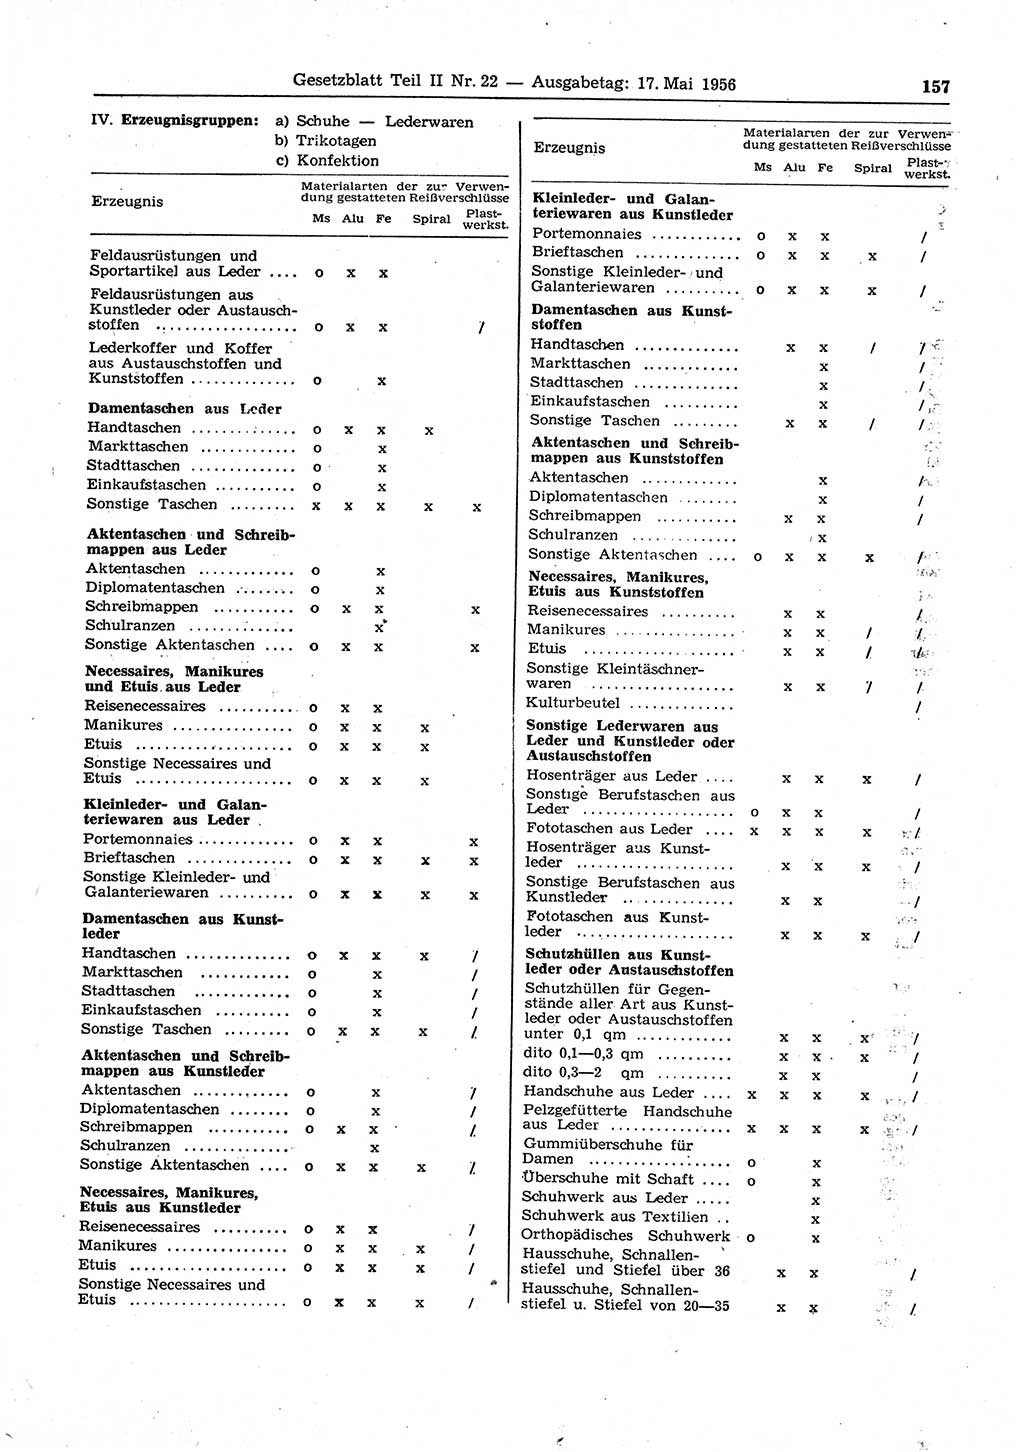 Gesetzblatt (GBl.) der Deutschen Demokratischen Republik (DDR) Teil ⅠⅠ 1956, Seite 157 (GBl. DDR ⅠⅠ 1956, S. 157)